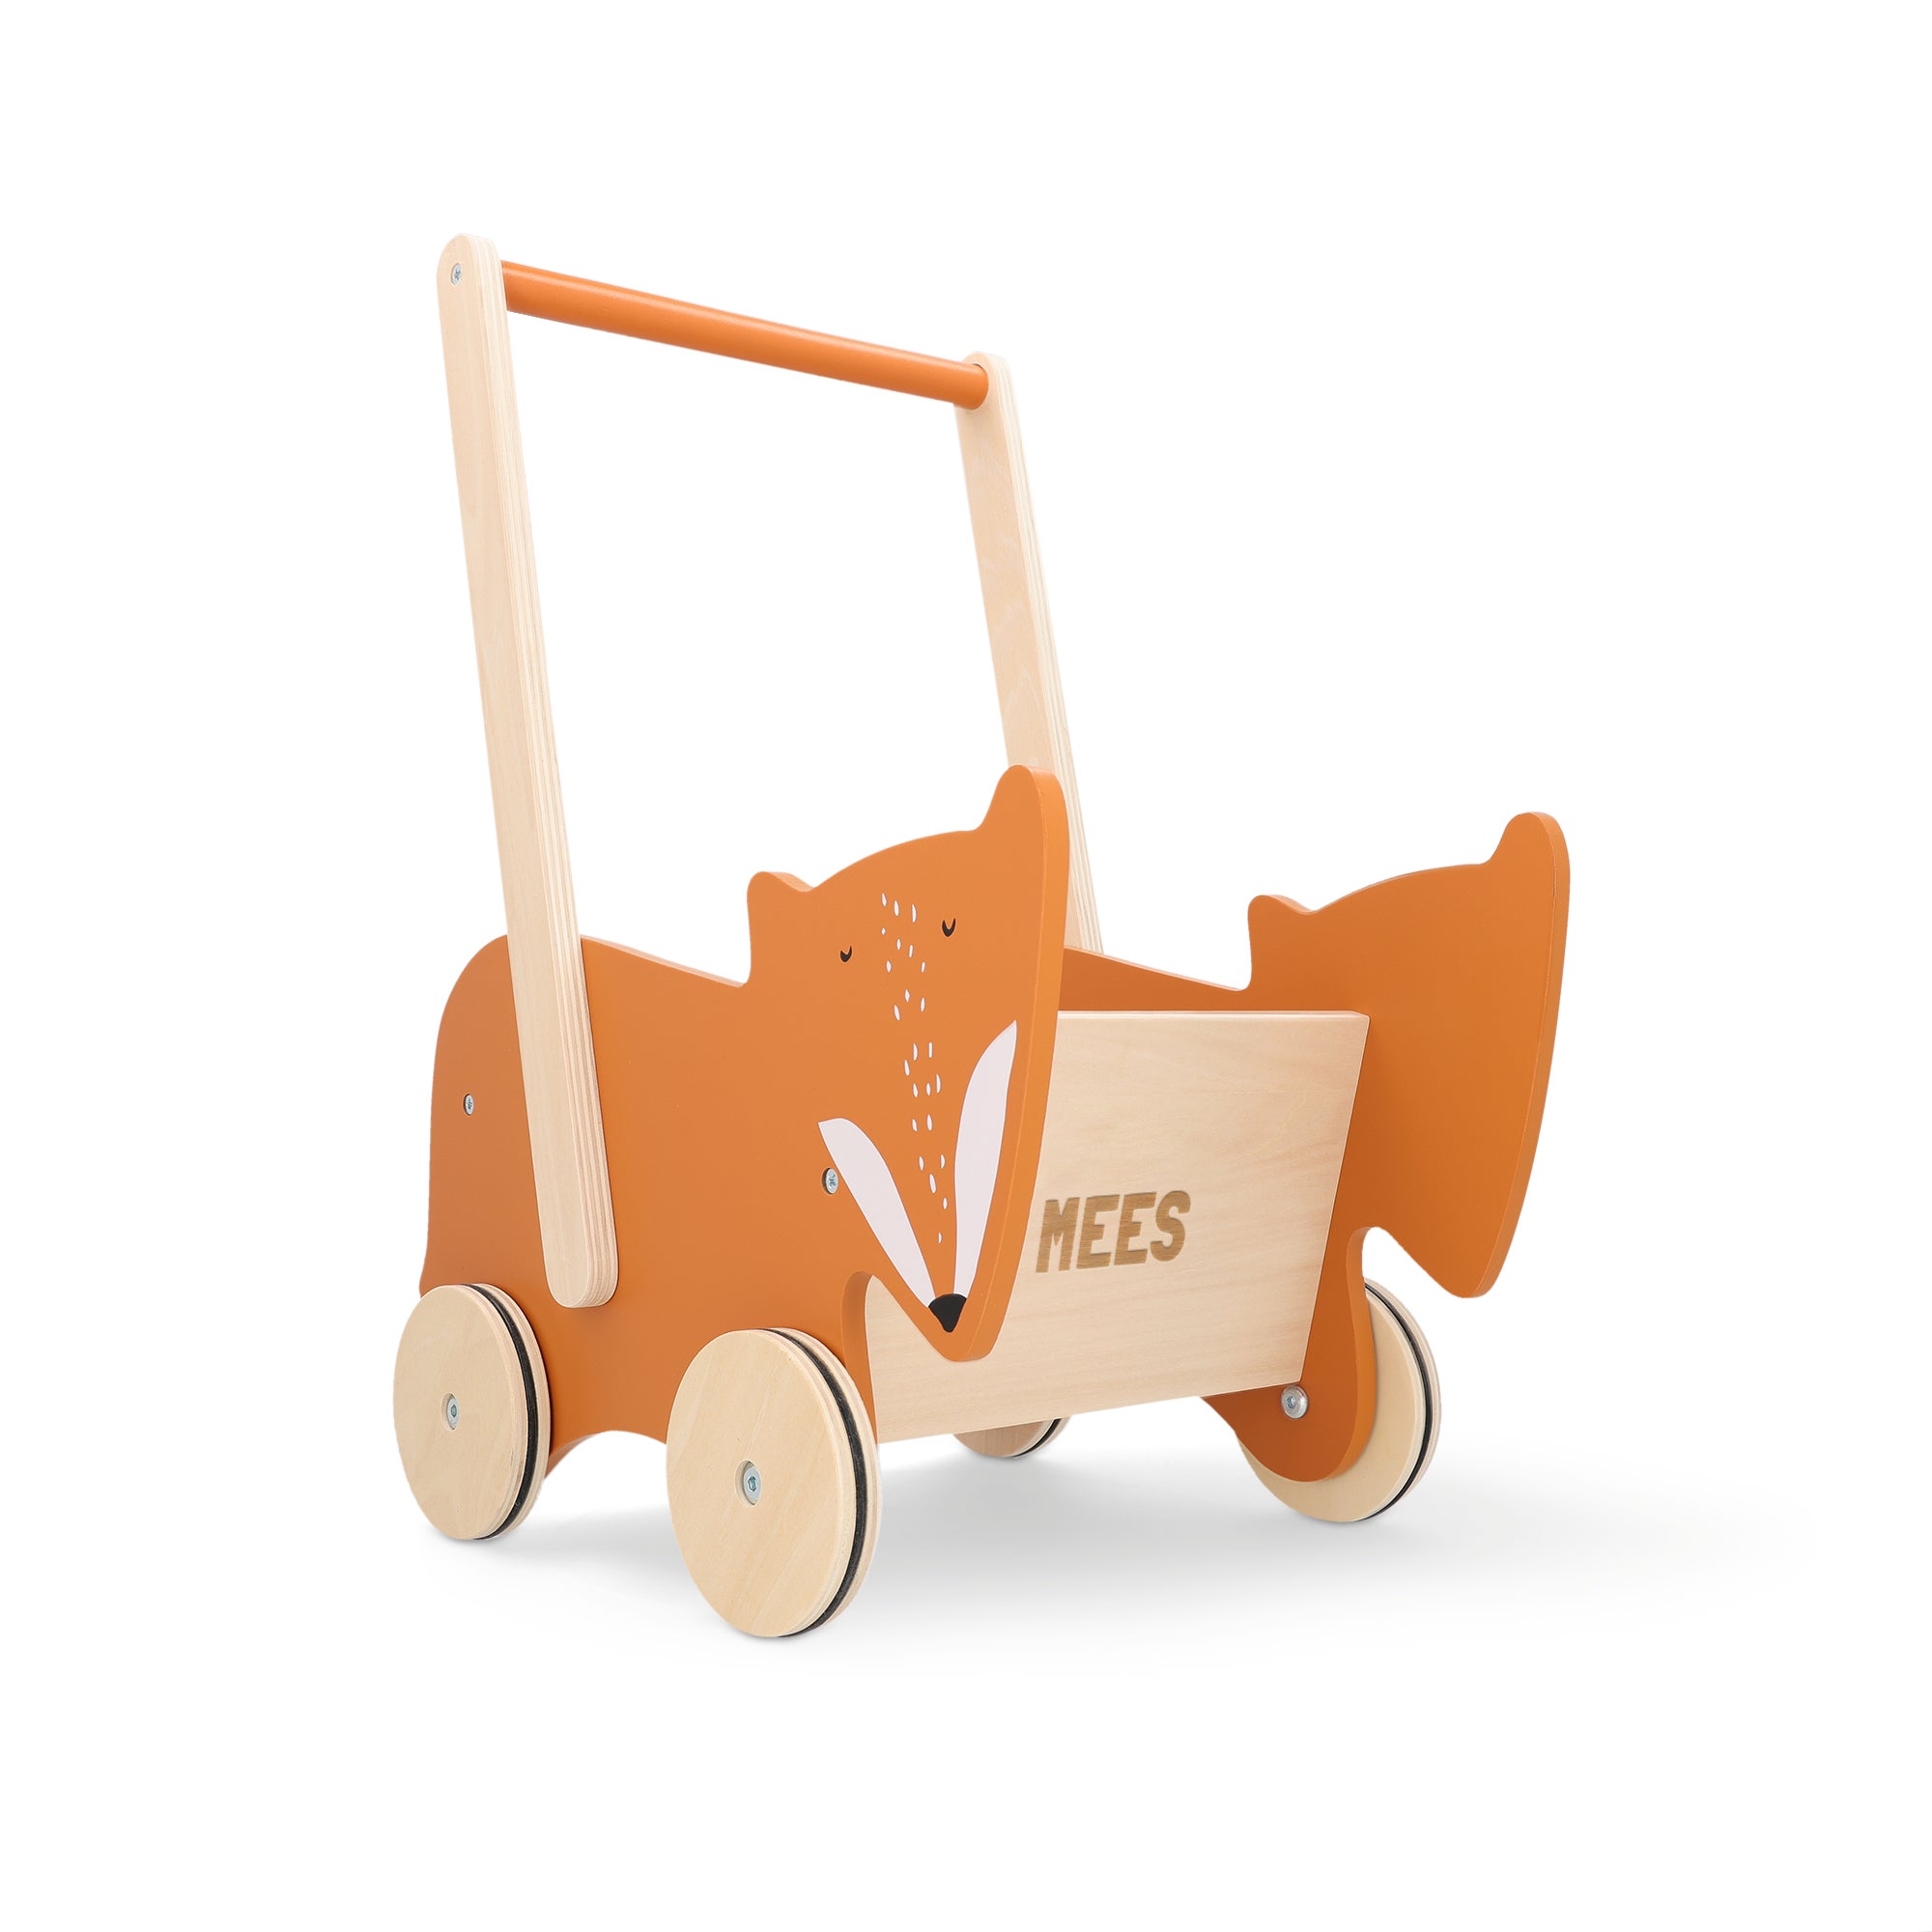 Trixie houten loopwagen met naam